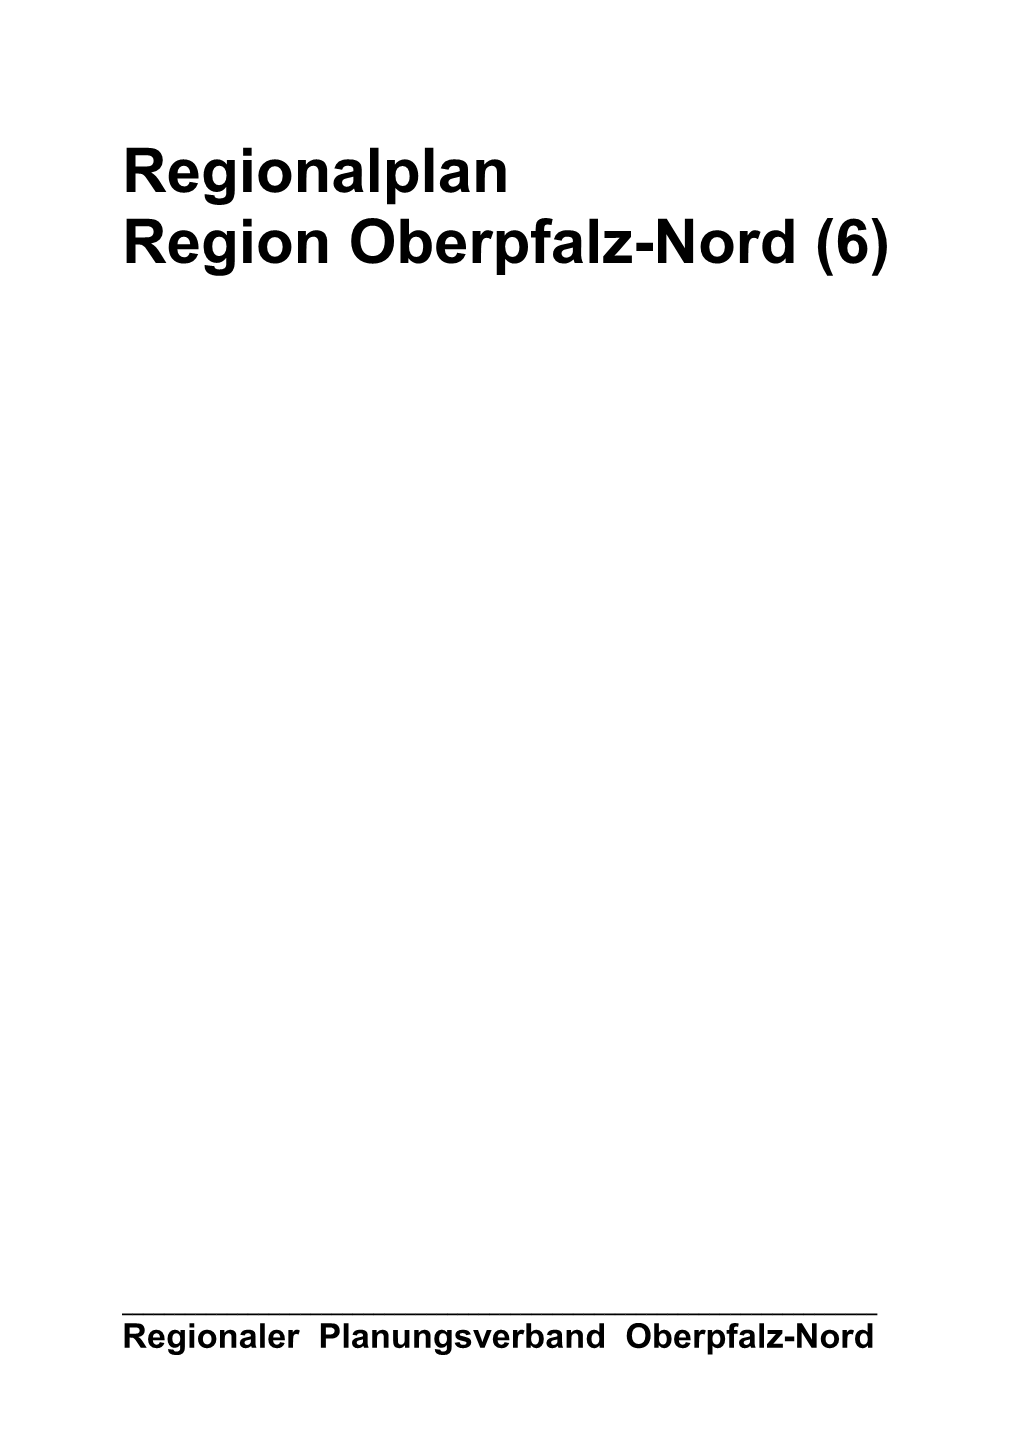 Regionalplan Region Oberpfalz-Nord (6)